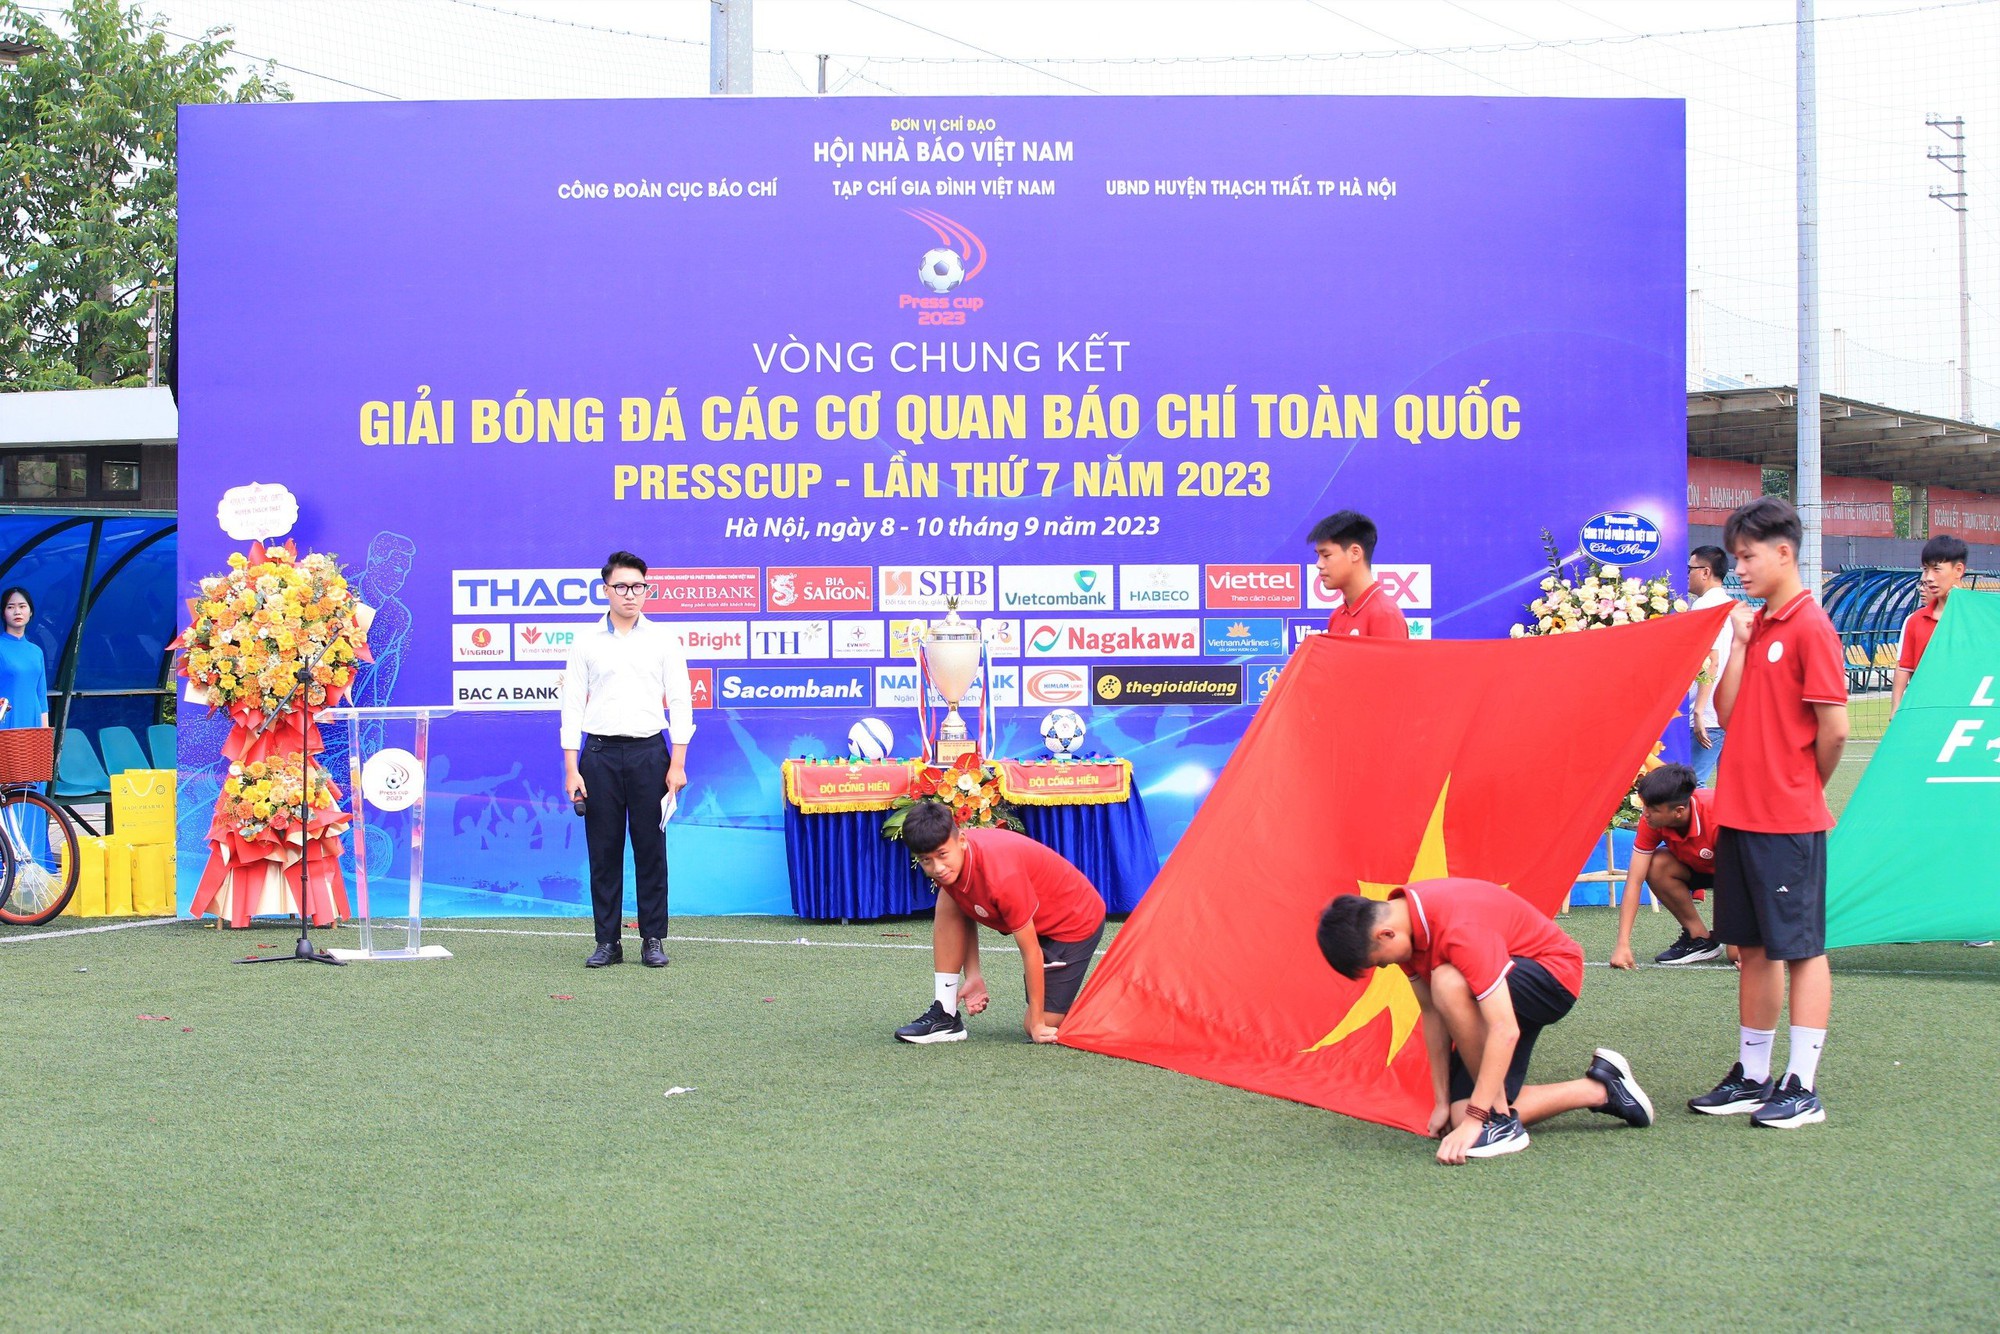 Khai mạc Vòng chung kết Press Cup 2023: báo NTNN/Dân Việt để hòa trận đầu ra quân - Ảnh 1.